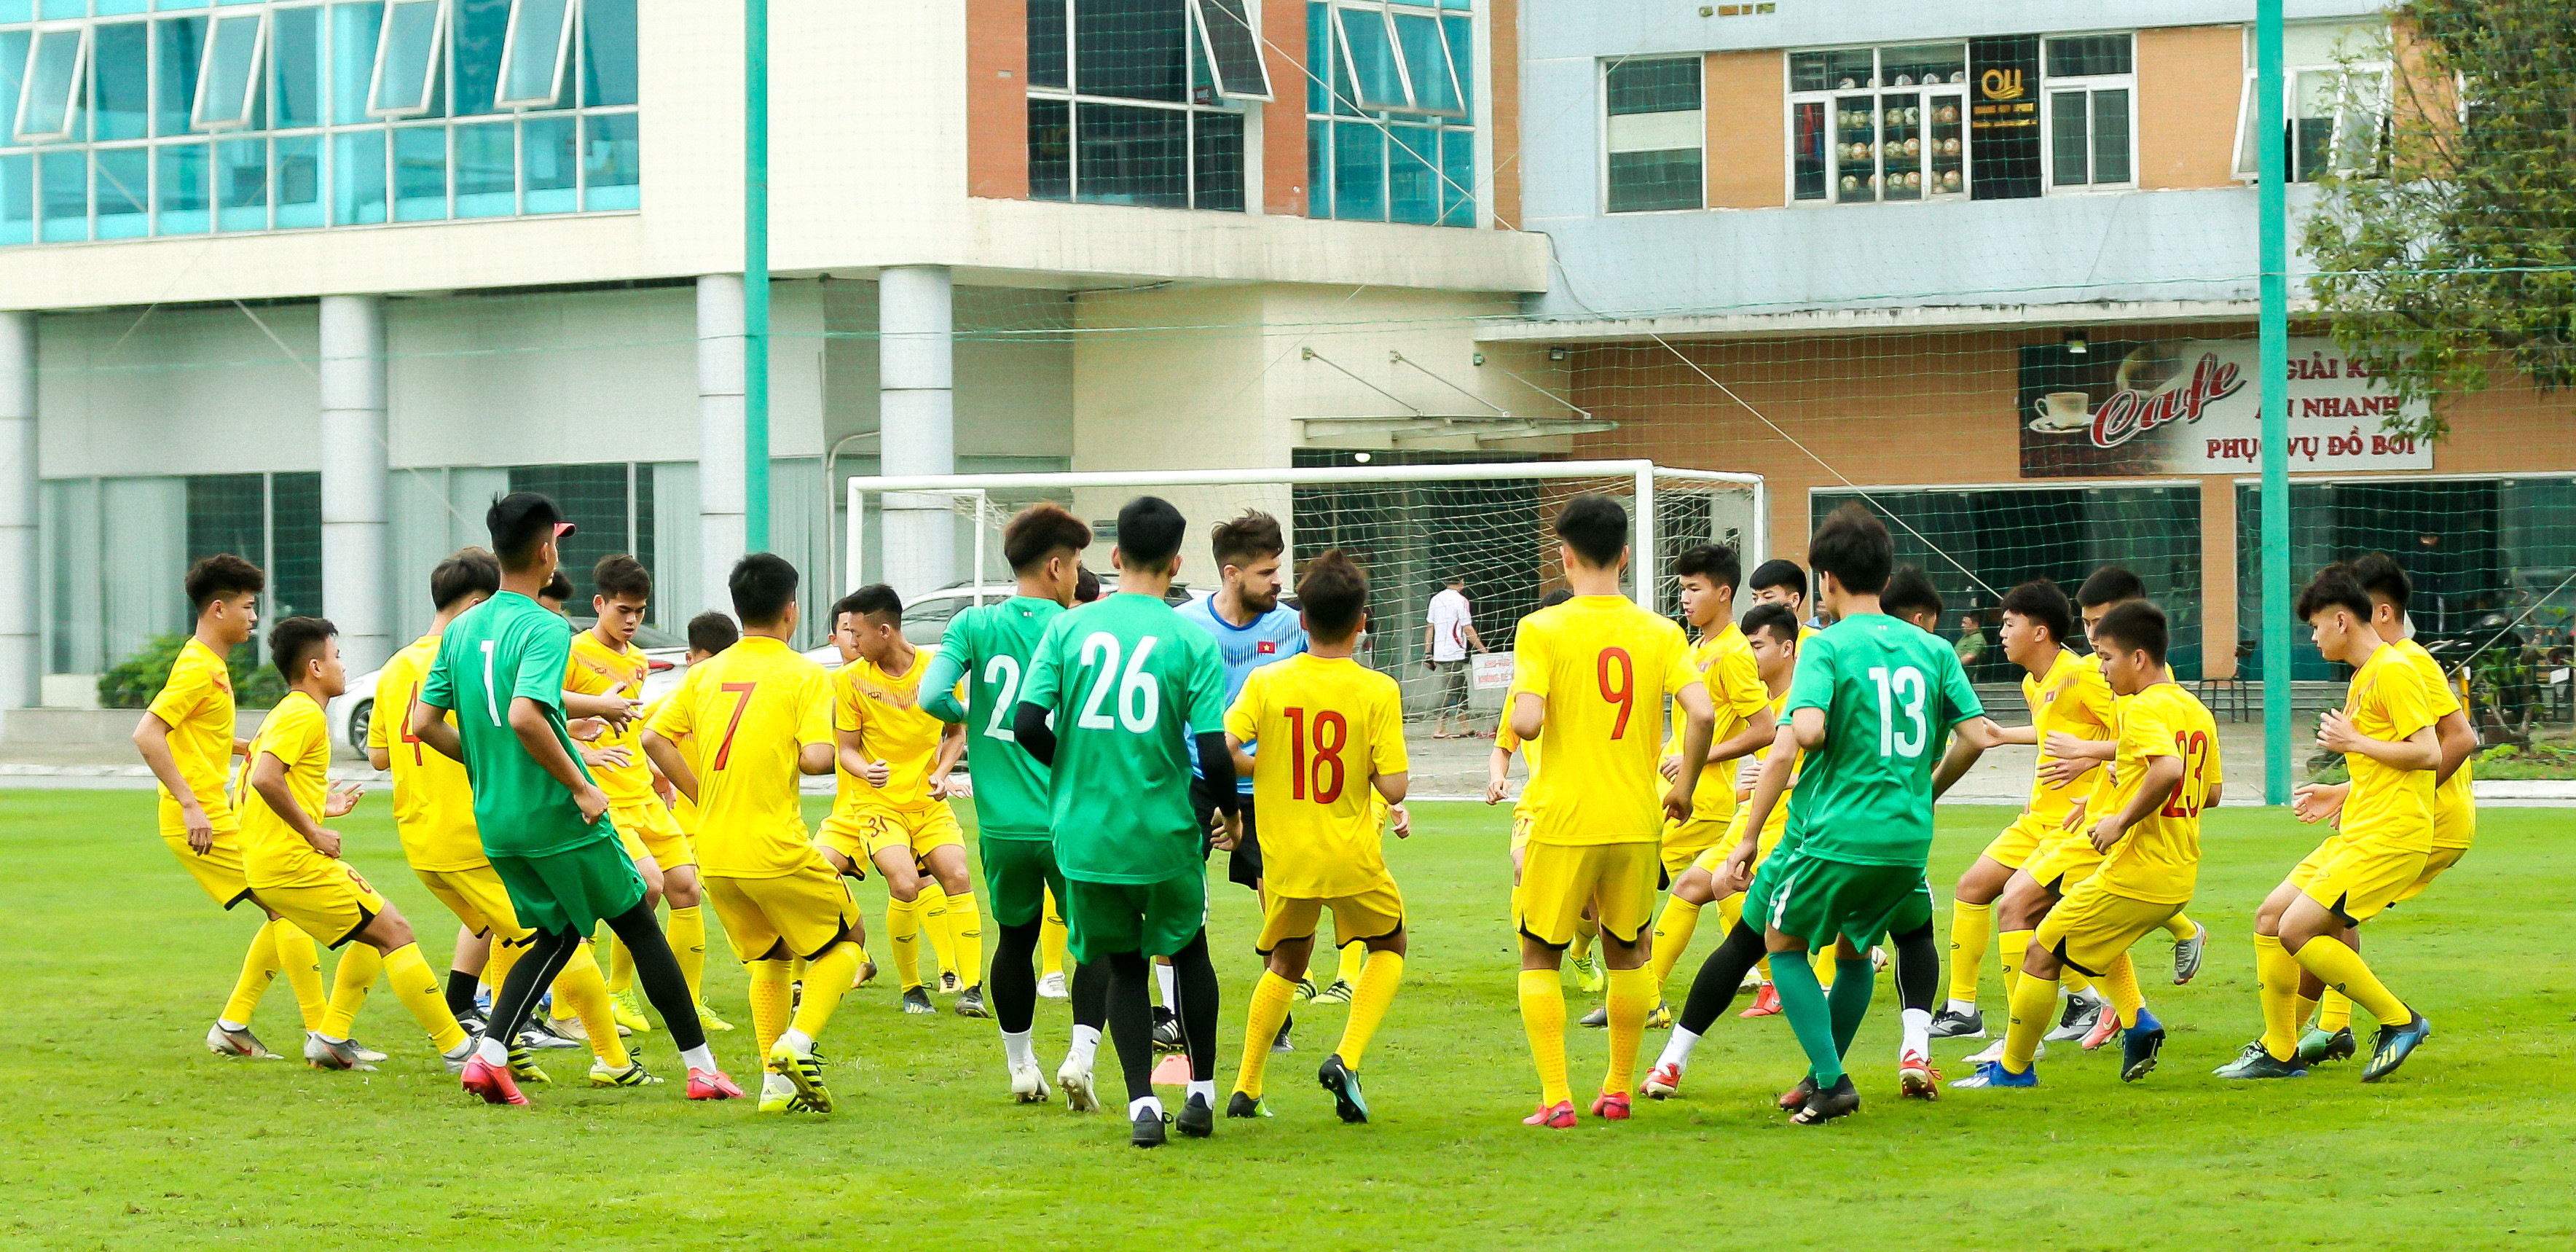 Các cầu thủ U18 Việt Nam khởi động cùng HLV thể lực người nước ngoài trước khi bước vào buổi tập. Ảnh: Hải Hoàng